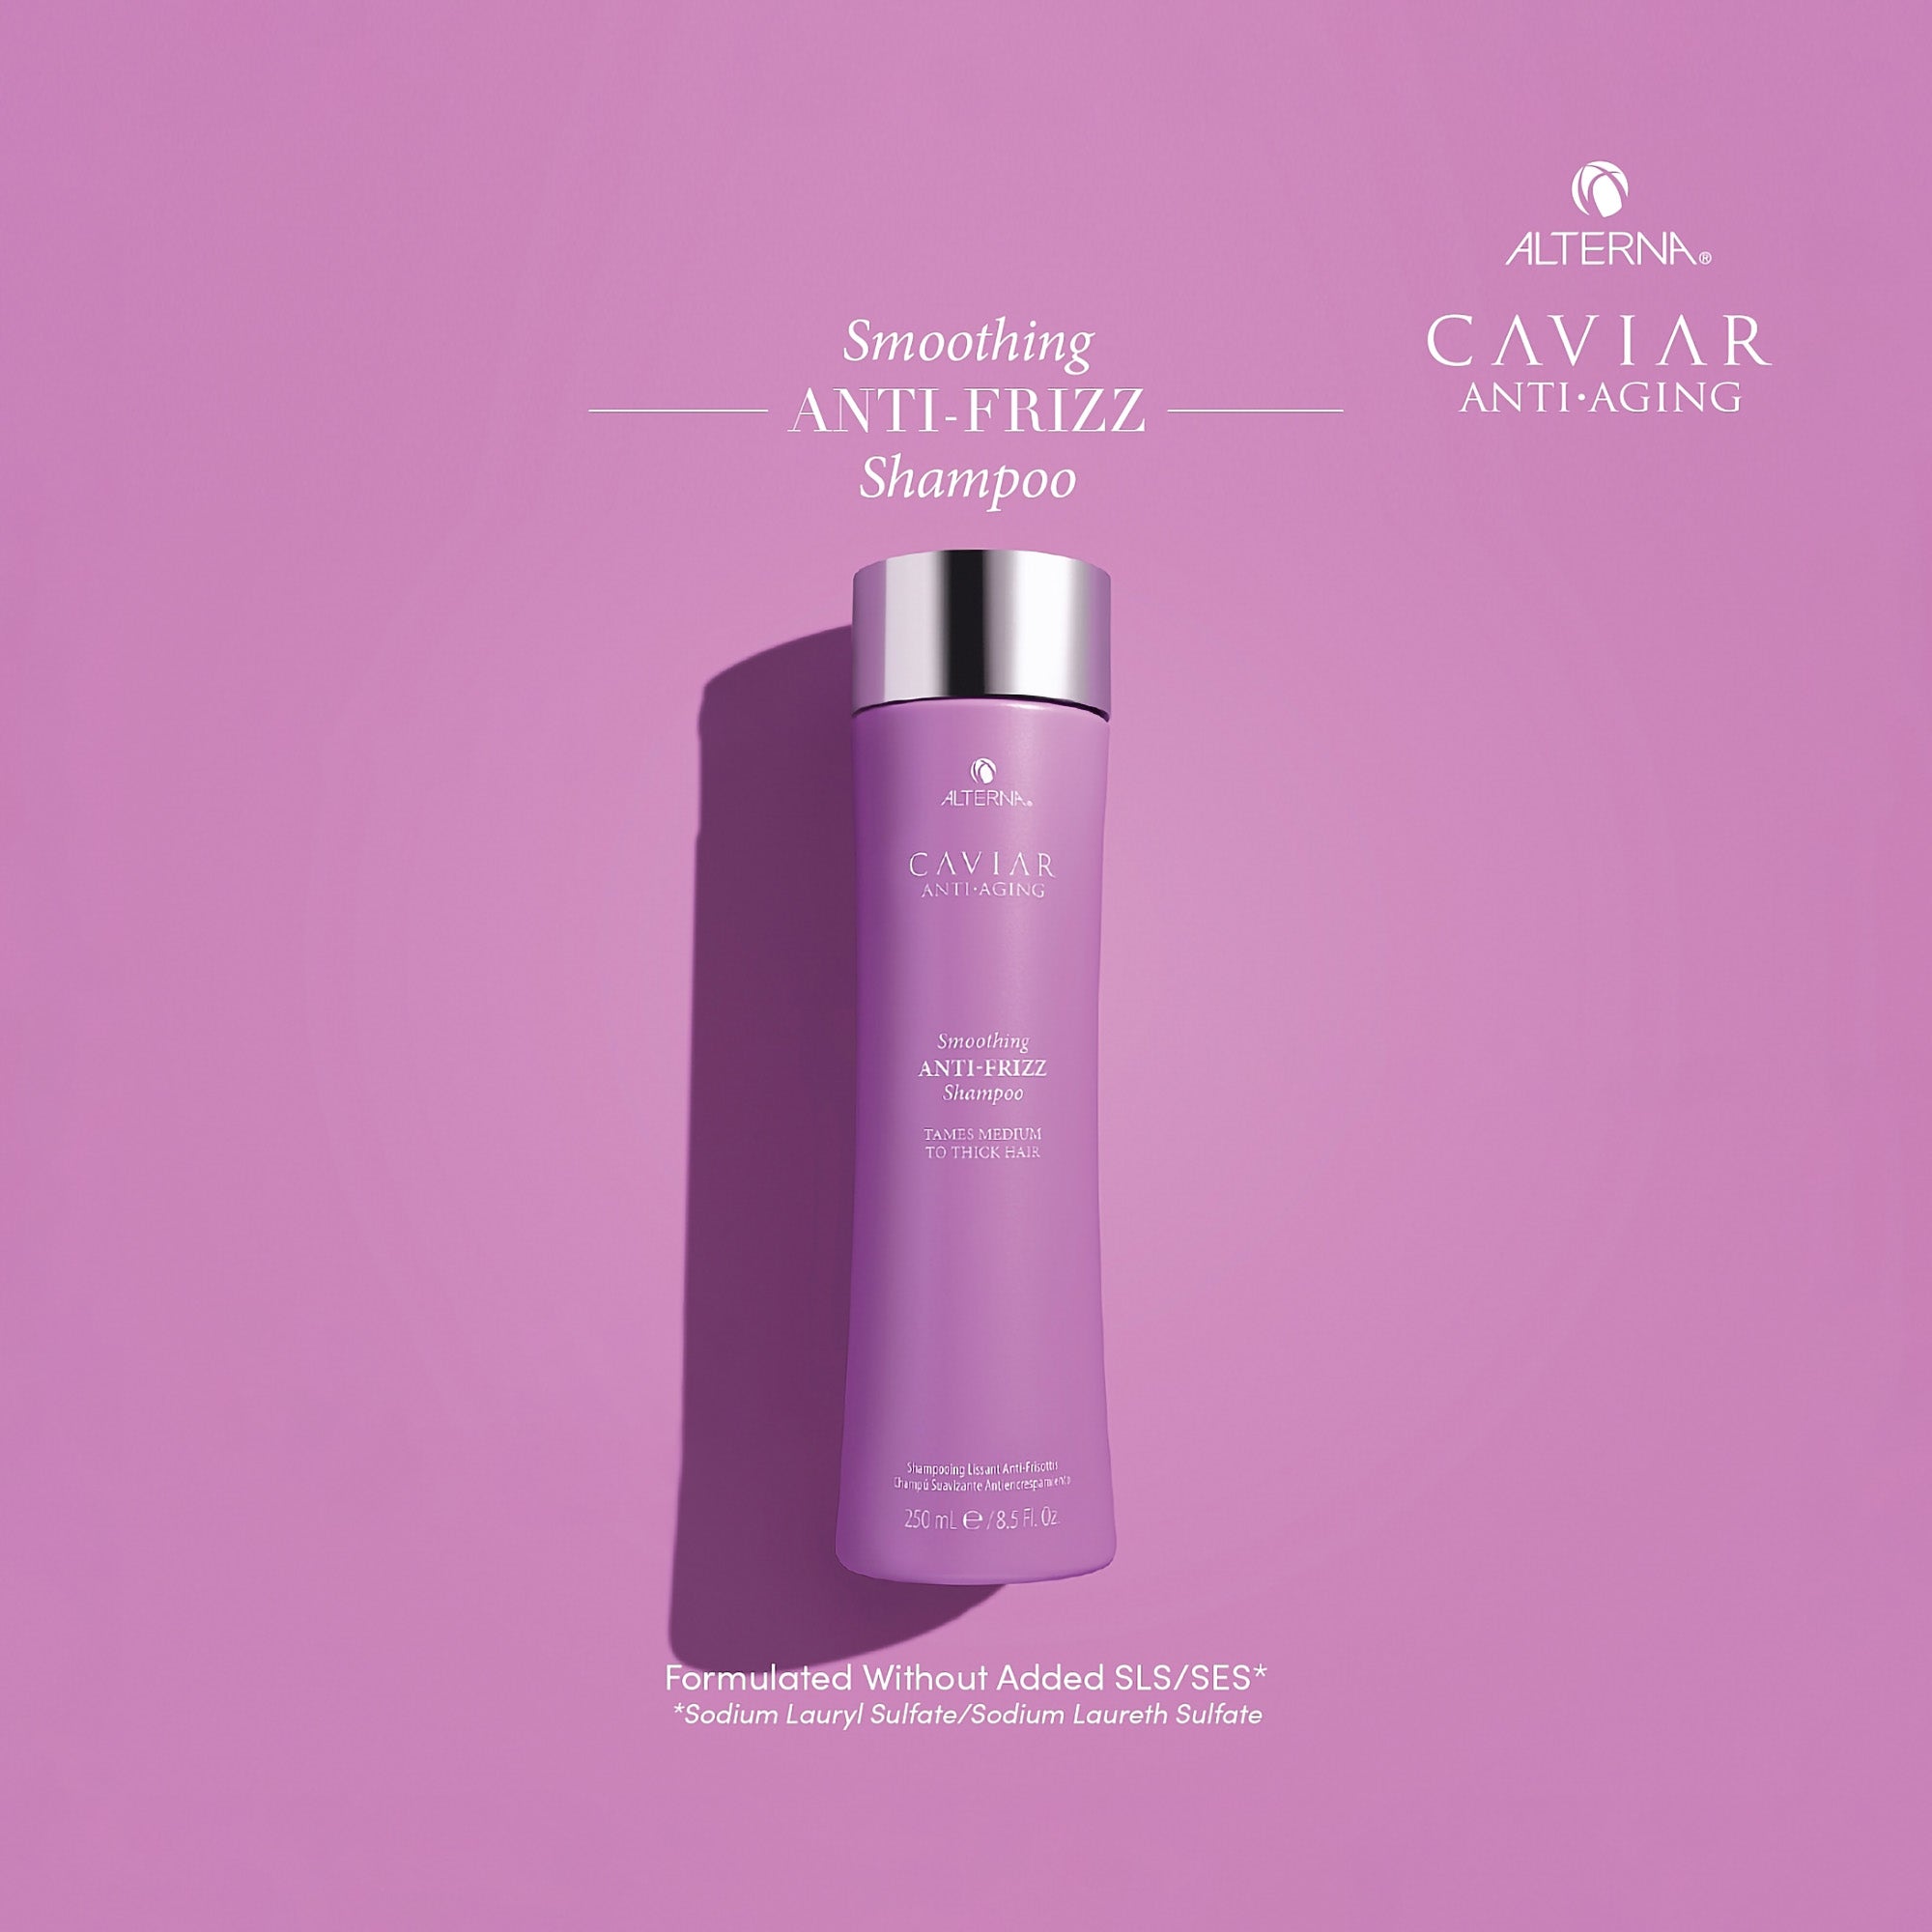 Alterna Caviar Anti-Aging Smoothing Anti-Frizz Shampoo / 8.5OZ